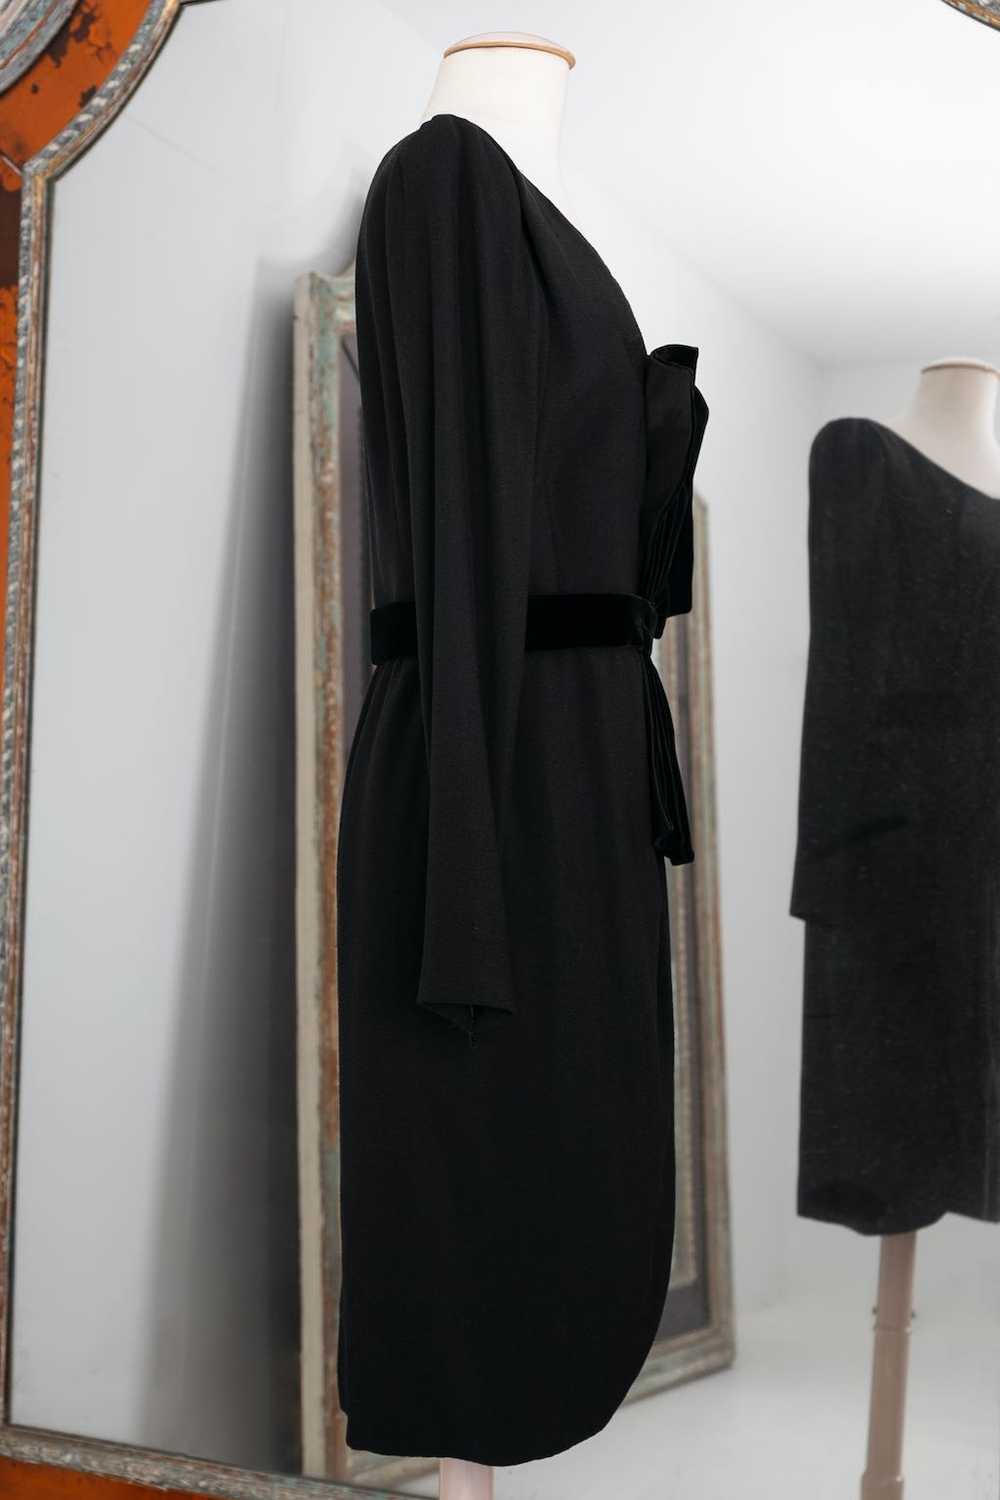 Yves saint Laurent Haute Couture black dress - image 4